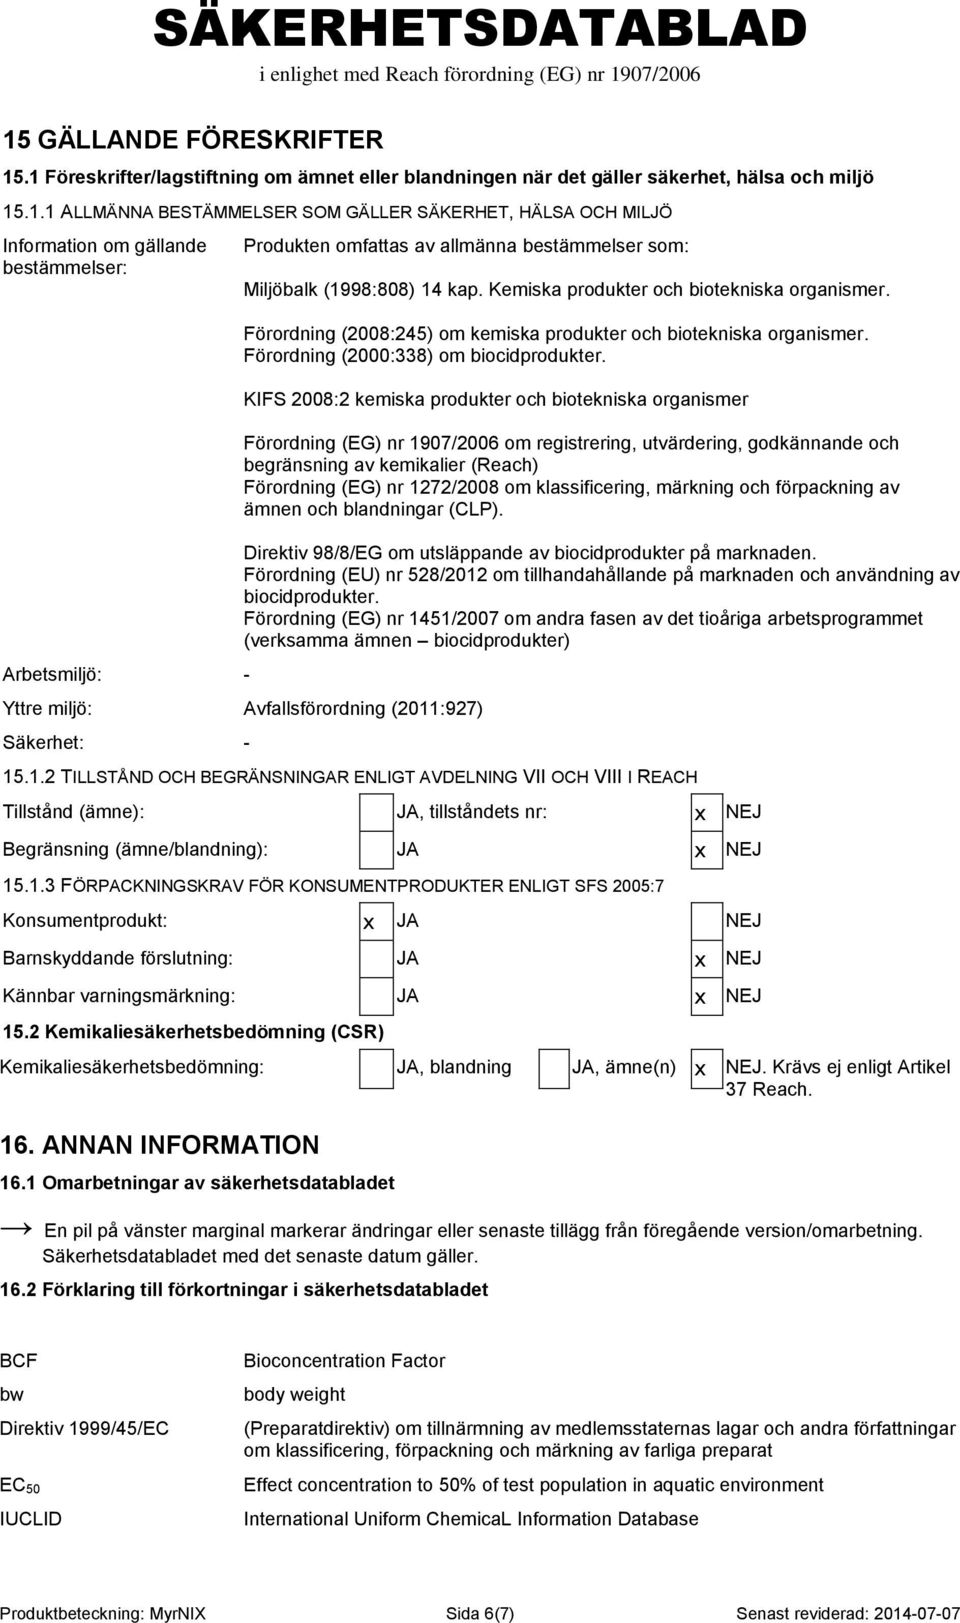 KIFS 2008:2 kemiska produkter och biotekniska organismer Förordning (EG) nr 1907/2006 om registrering, utvärdering, godkännande och begränsning av kemikalier (Reach) Förordning (EG) nr 1272/2008 om